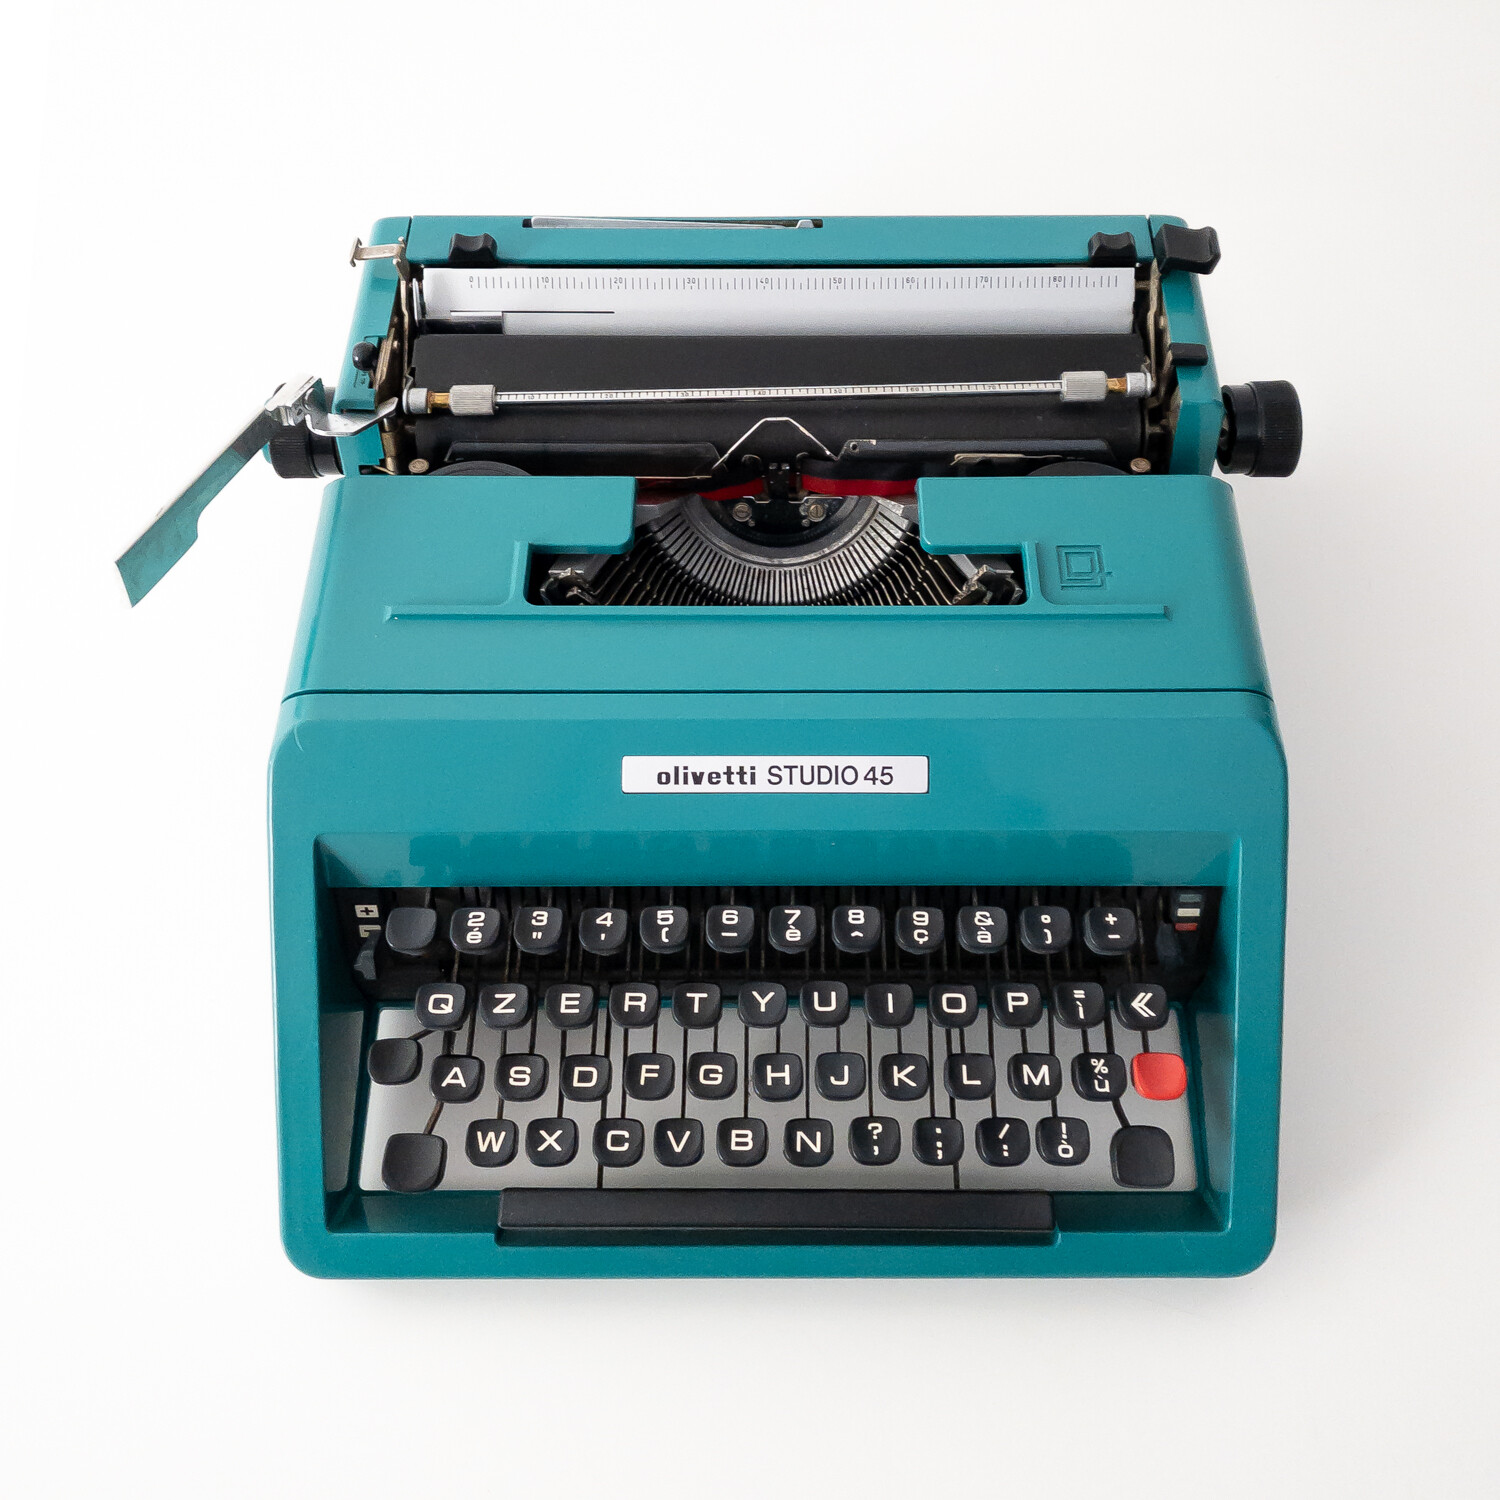 Studio 45 typewriter by Olivetti